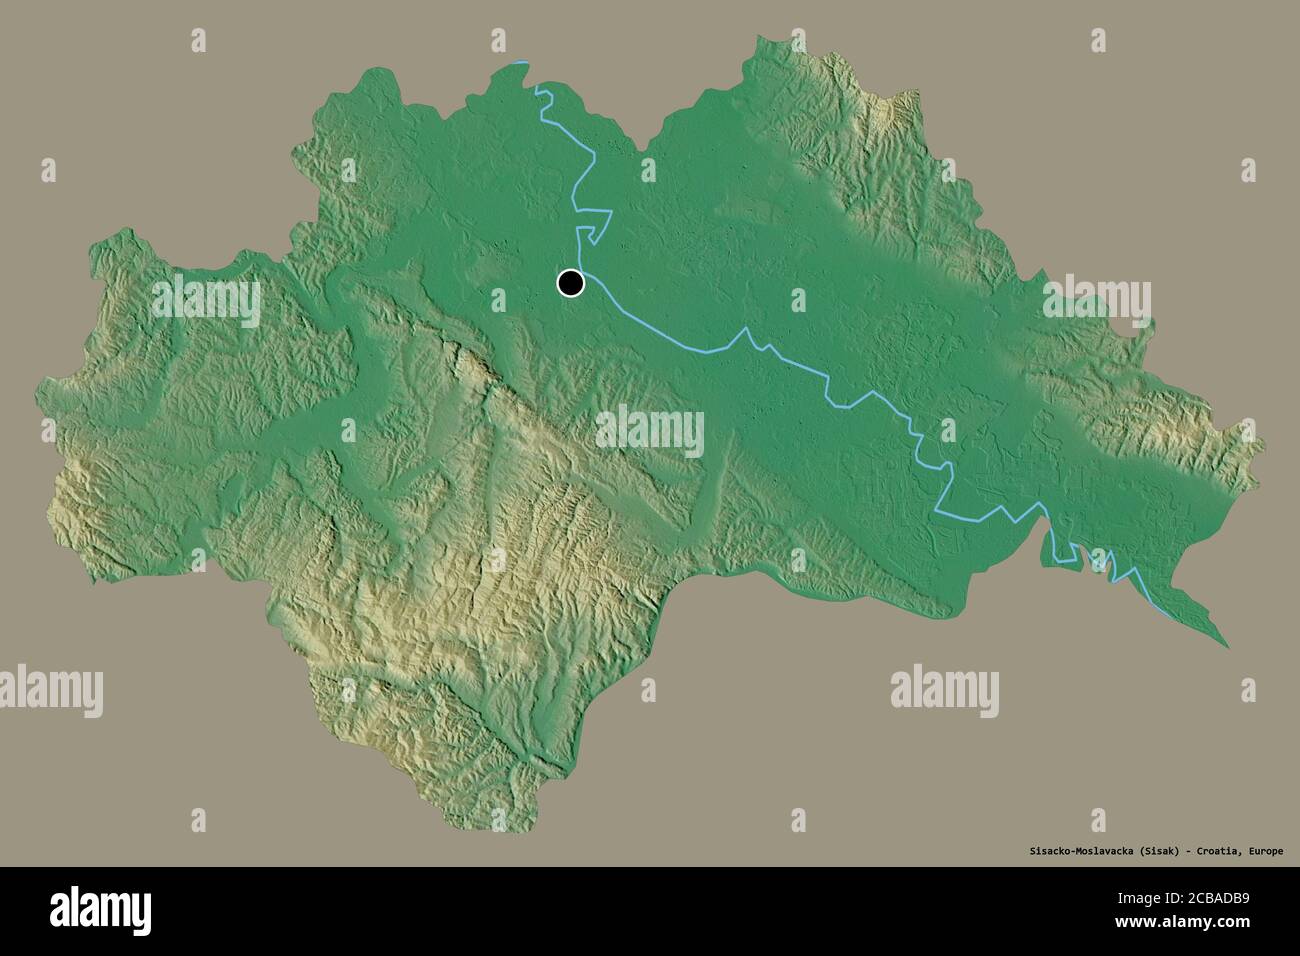 Form von Sisacko-Moslavacka, Grafschaft Kroatien, mit seiner Hauptstadt isoliert auf einem einfarbigen Hintergrund. Topografische Reliefkarte. 3D-Rendering Stockfoto